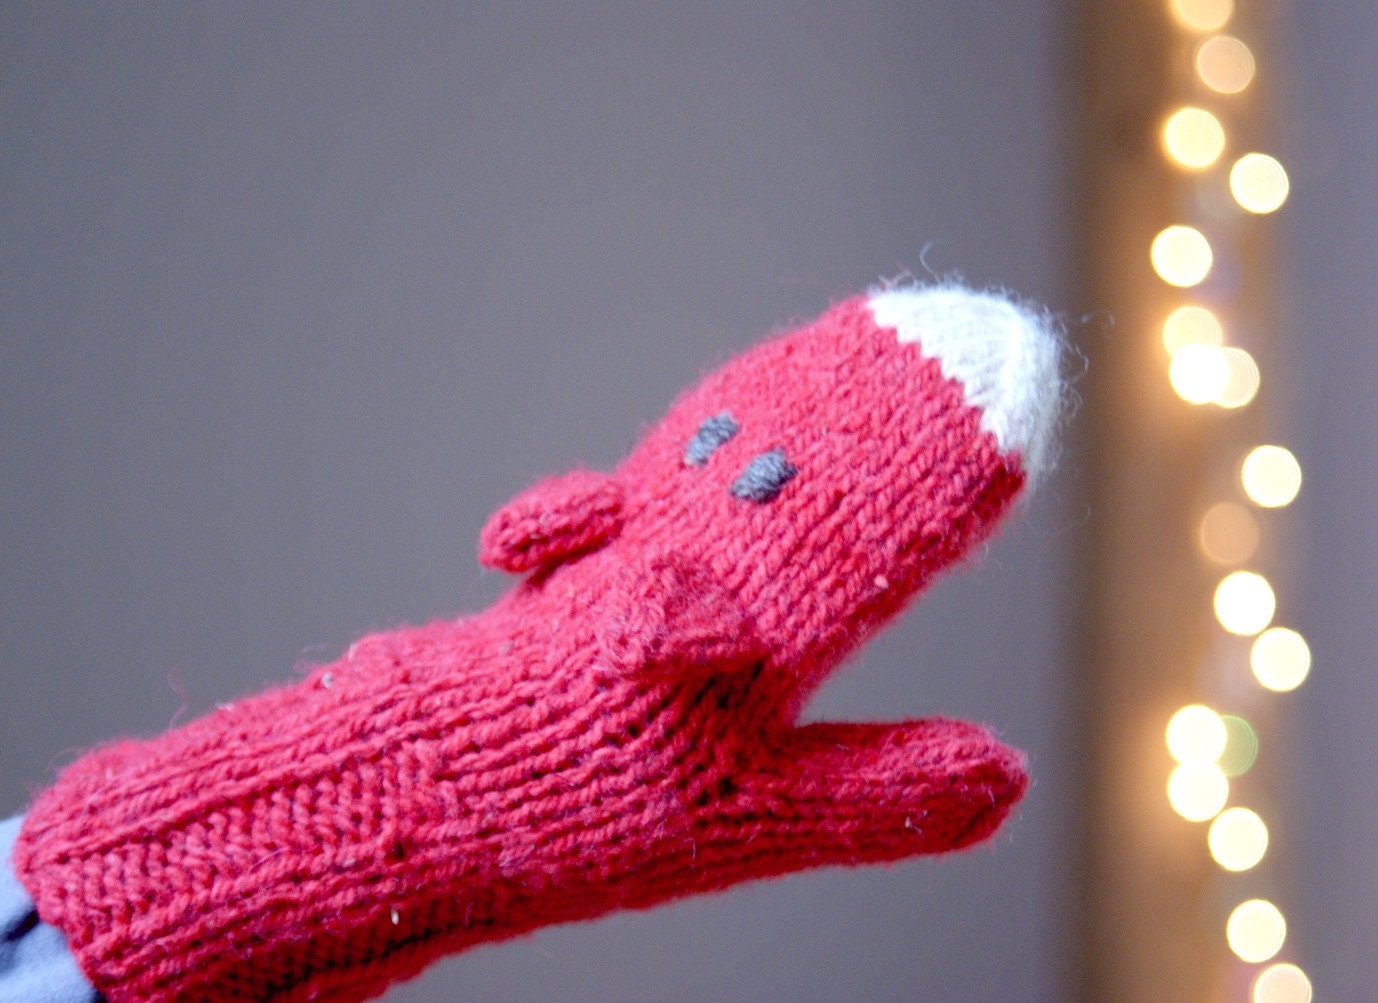 Fox mittens - Warm playful accessories for children - Children gift - Knitted fox gloves - Wool mittens in bright orange red - YarnBallStories